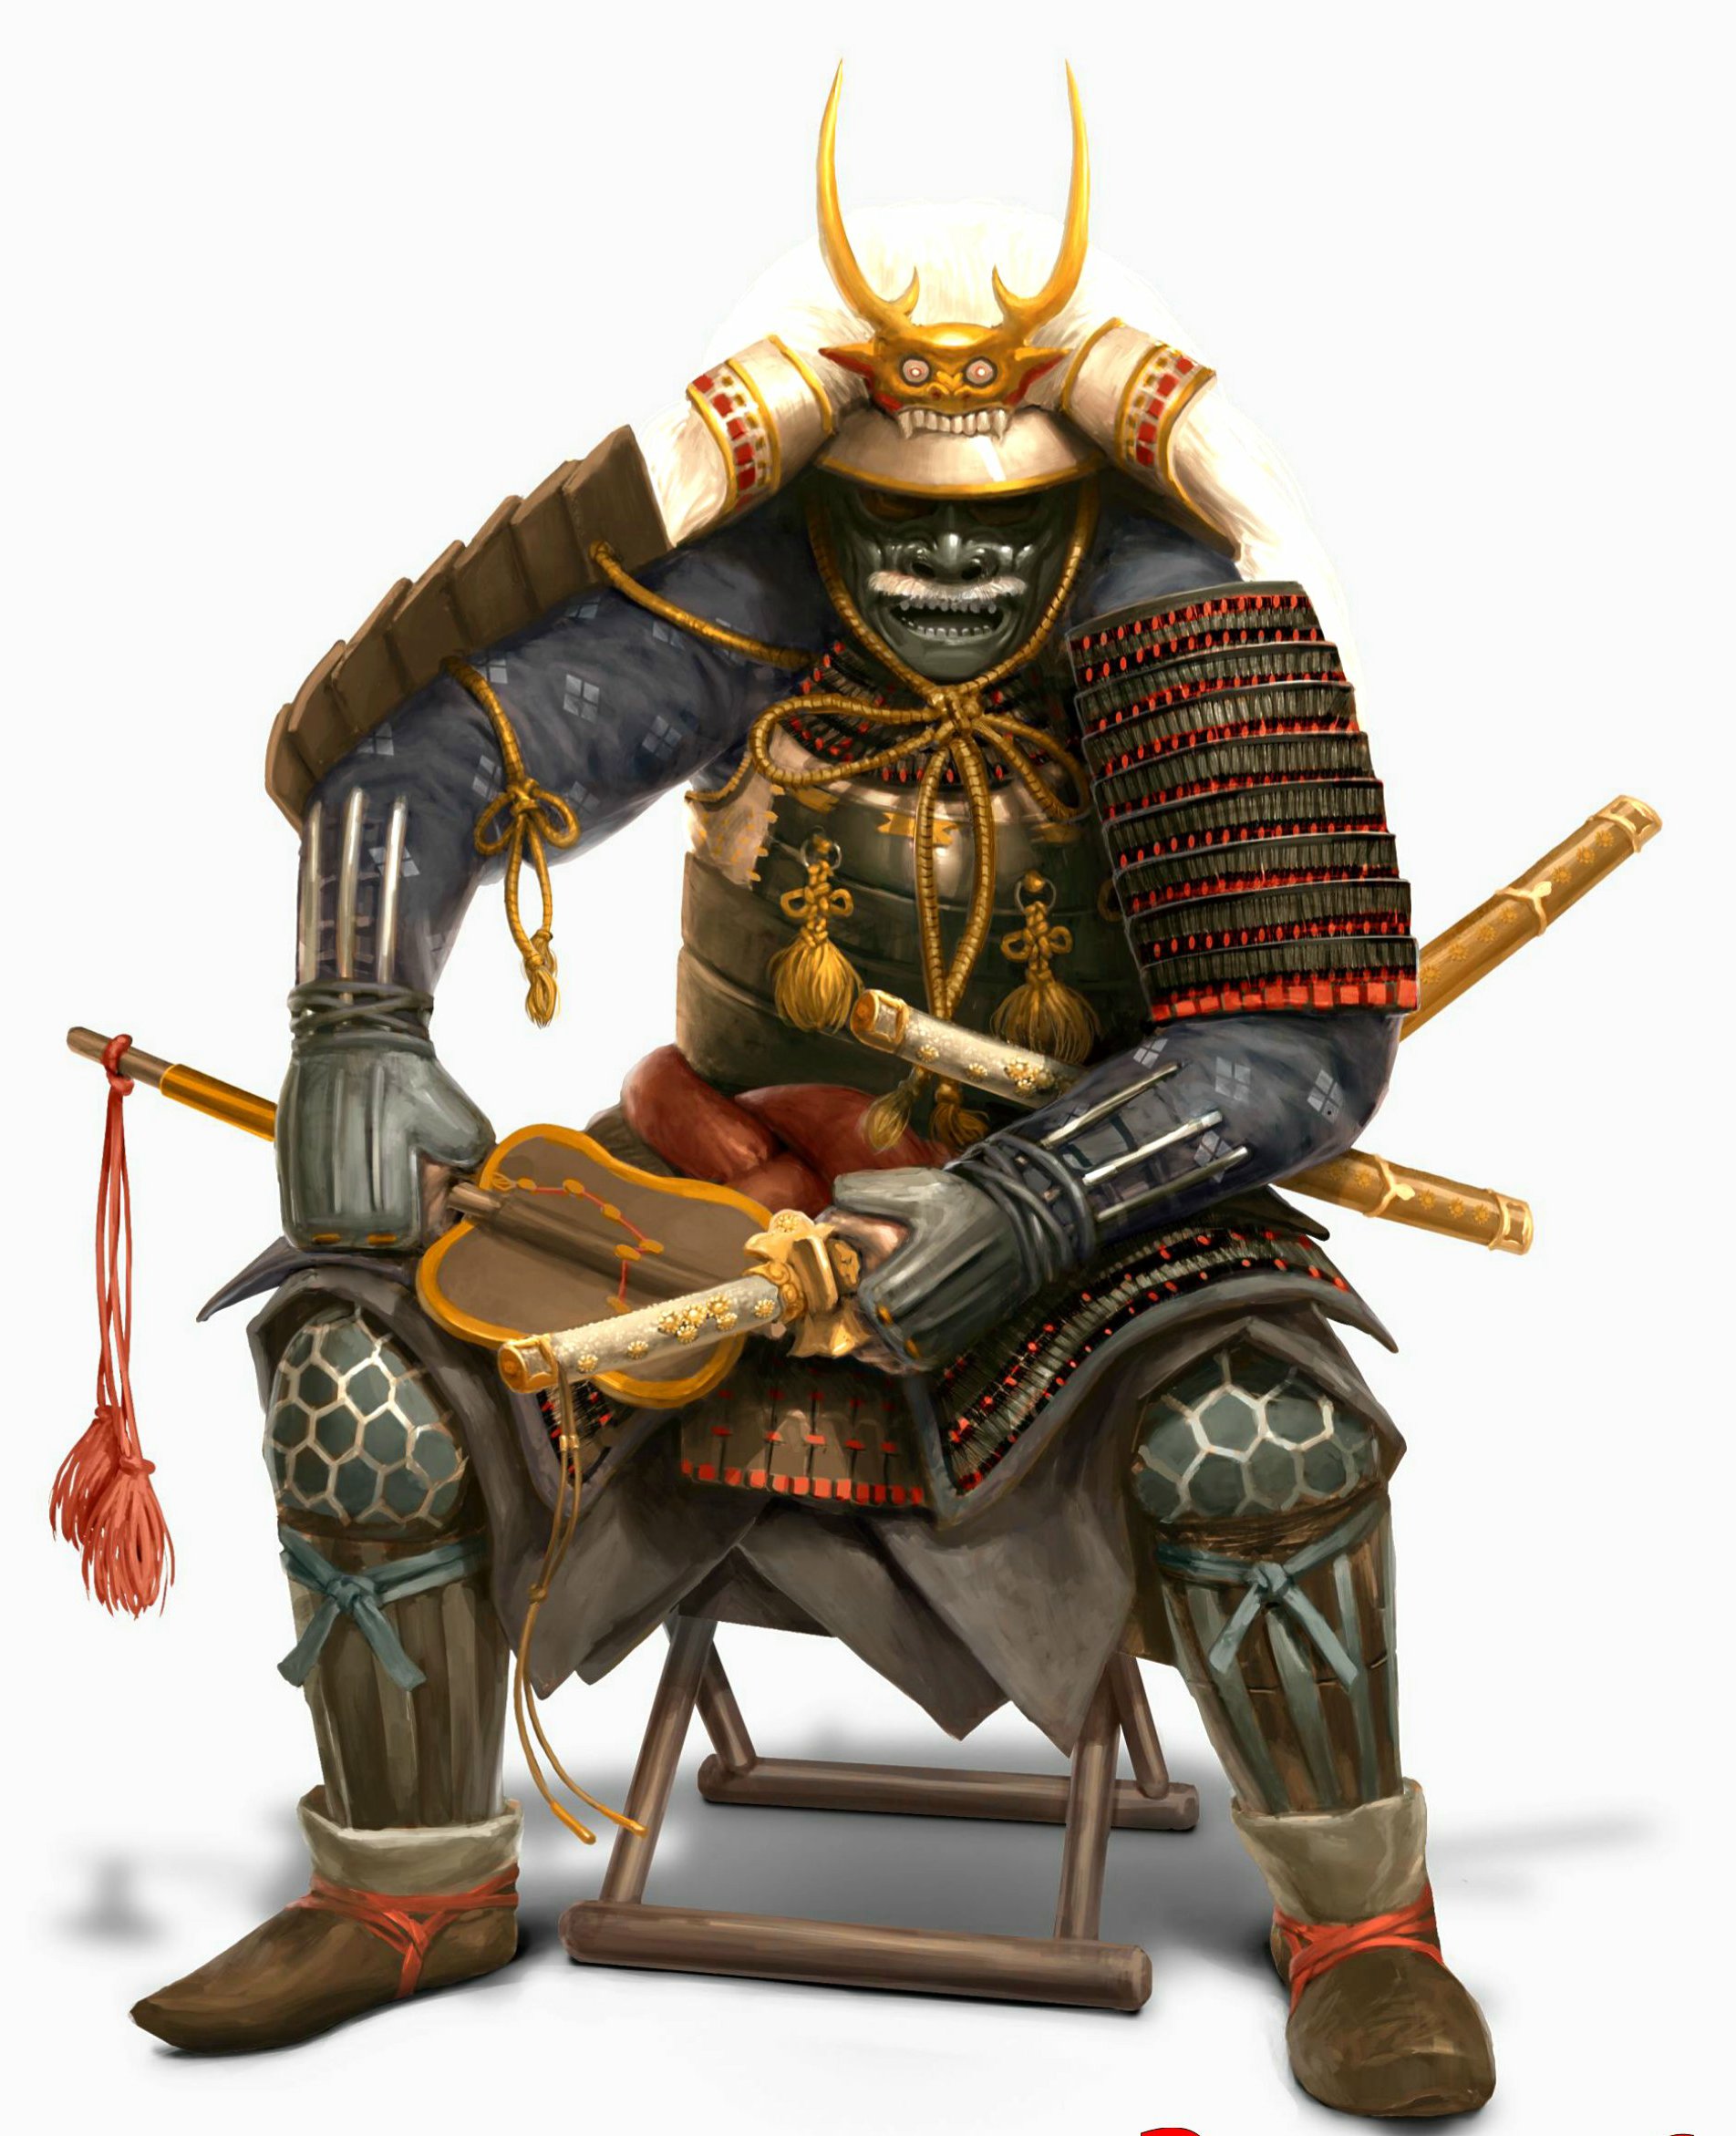 samurai1.jpg